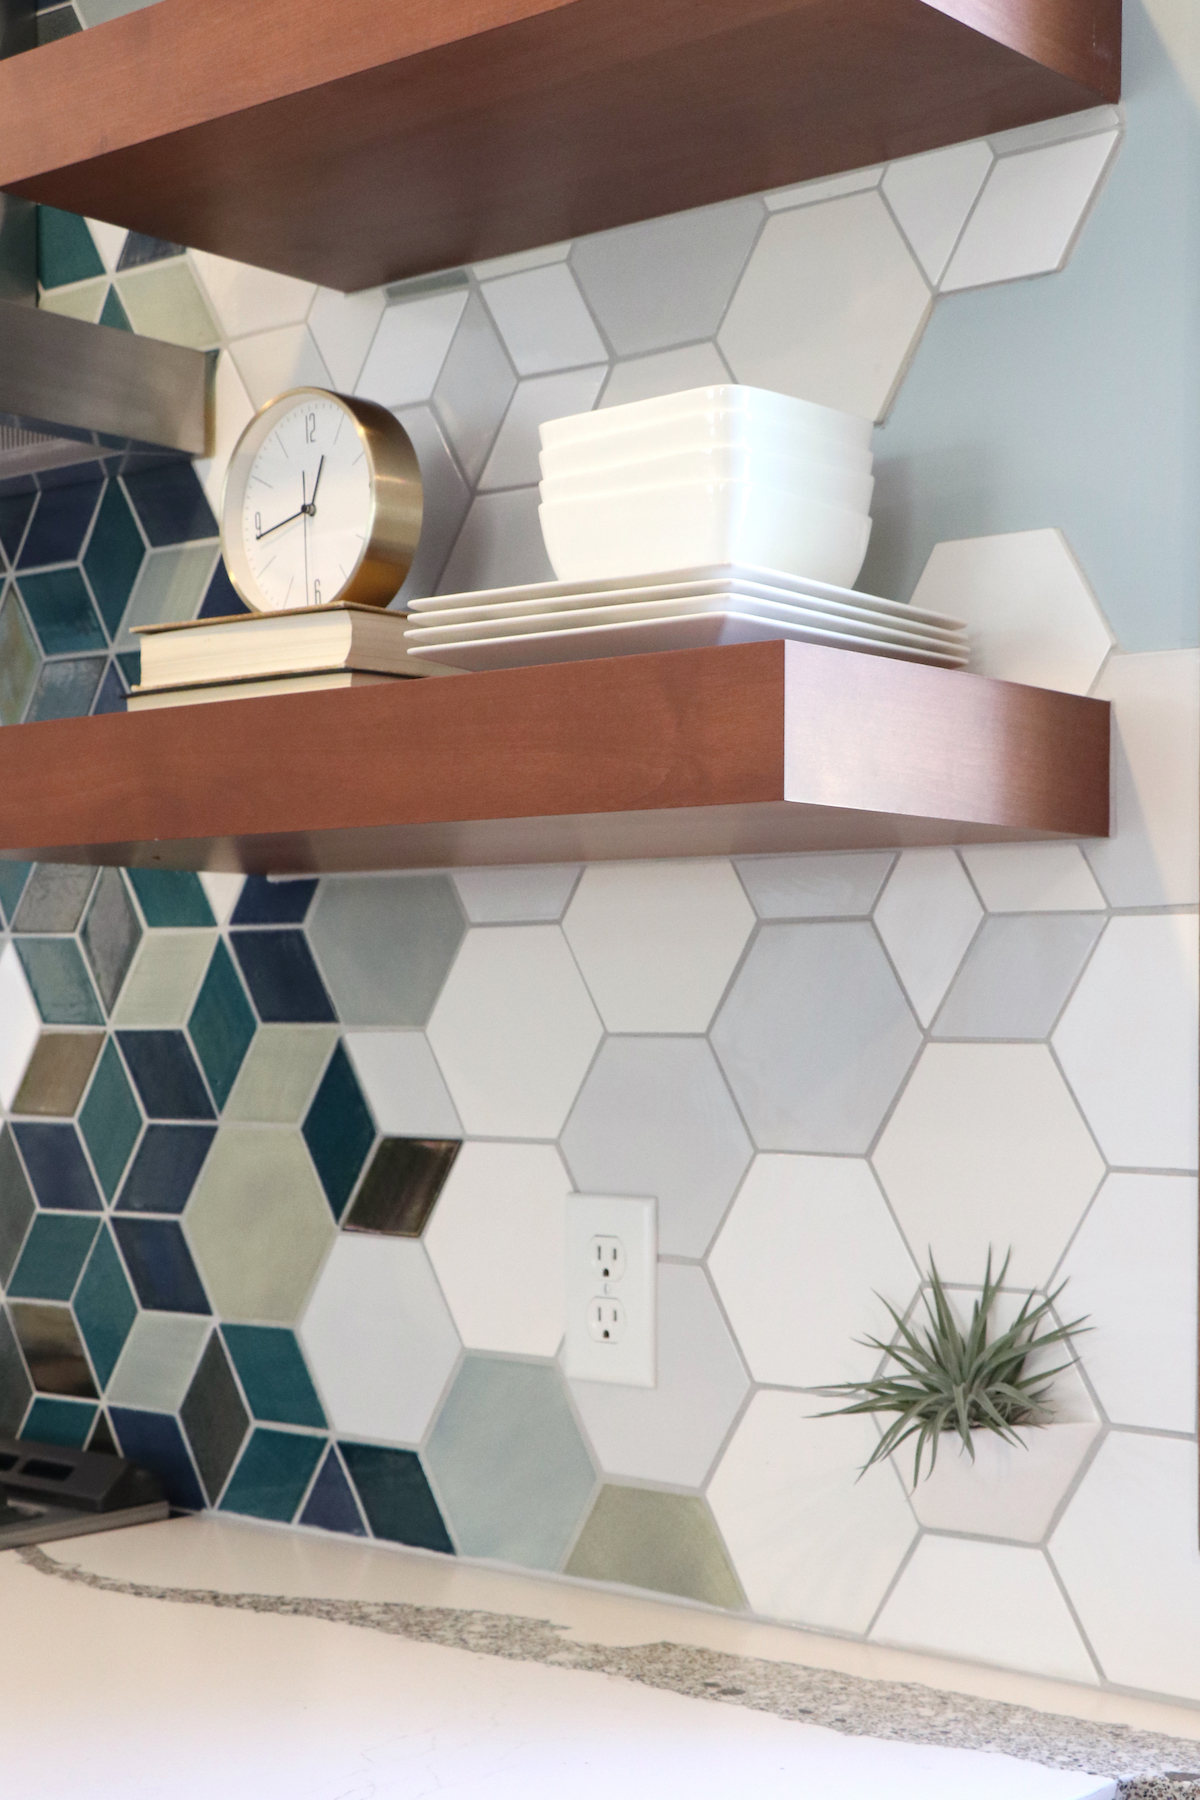 Kitchen remodel with new modern tile backsplash and floating shelves